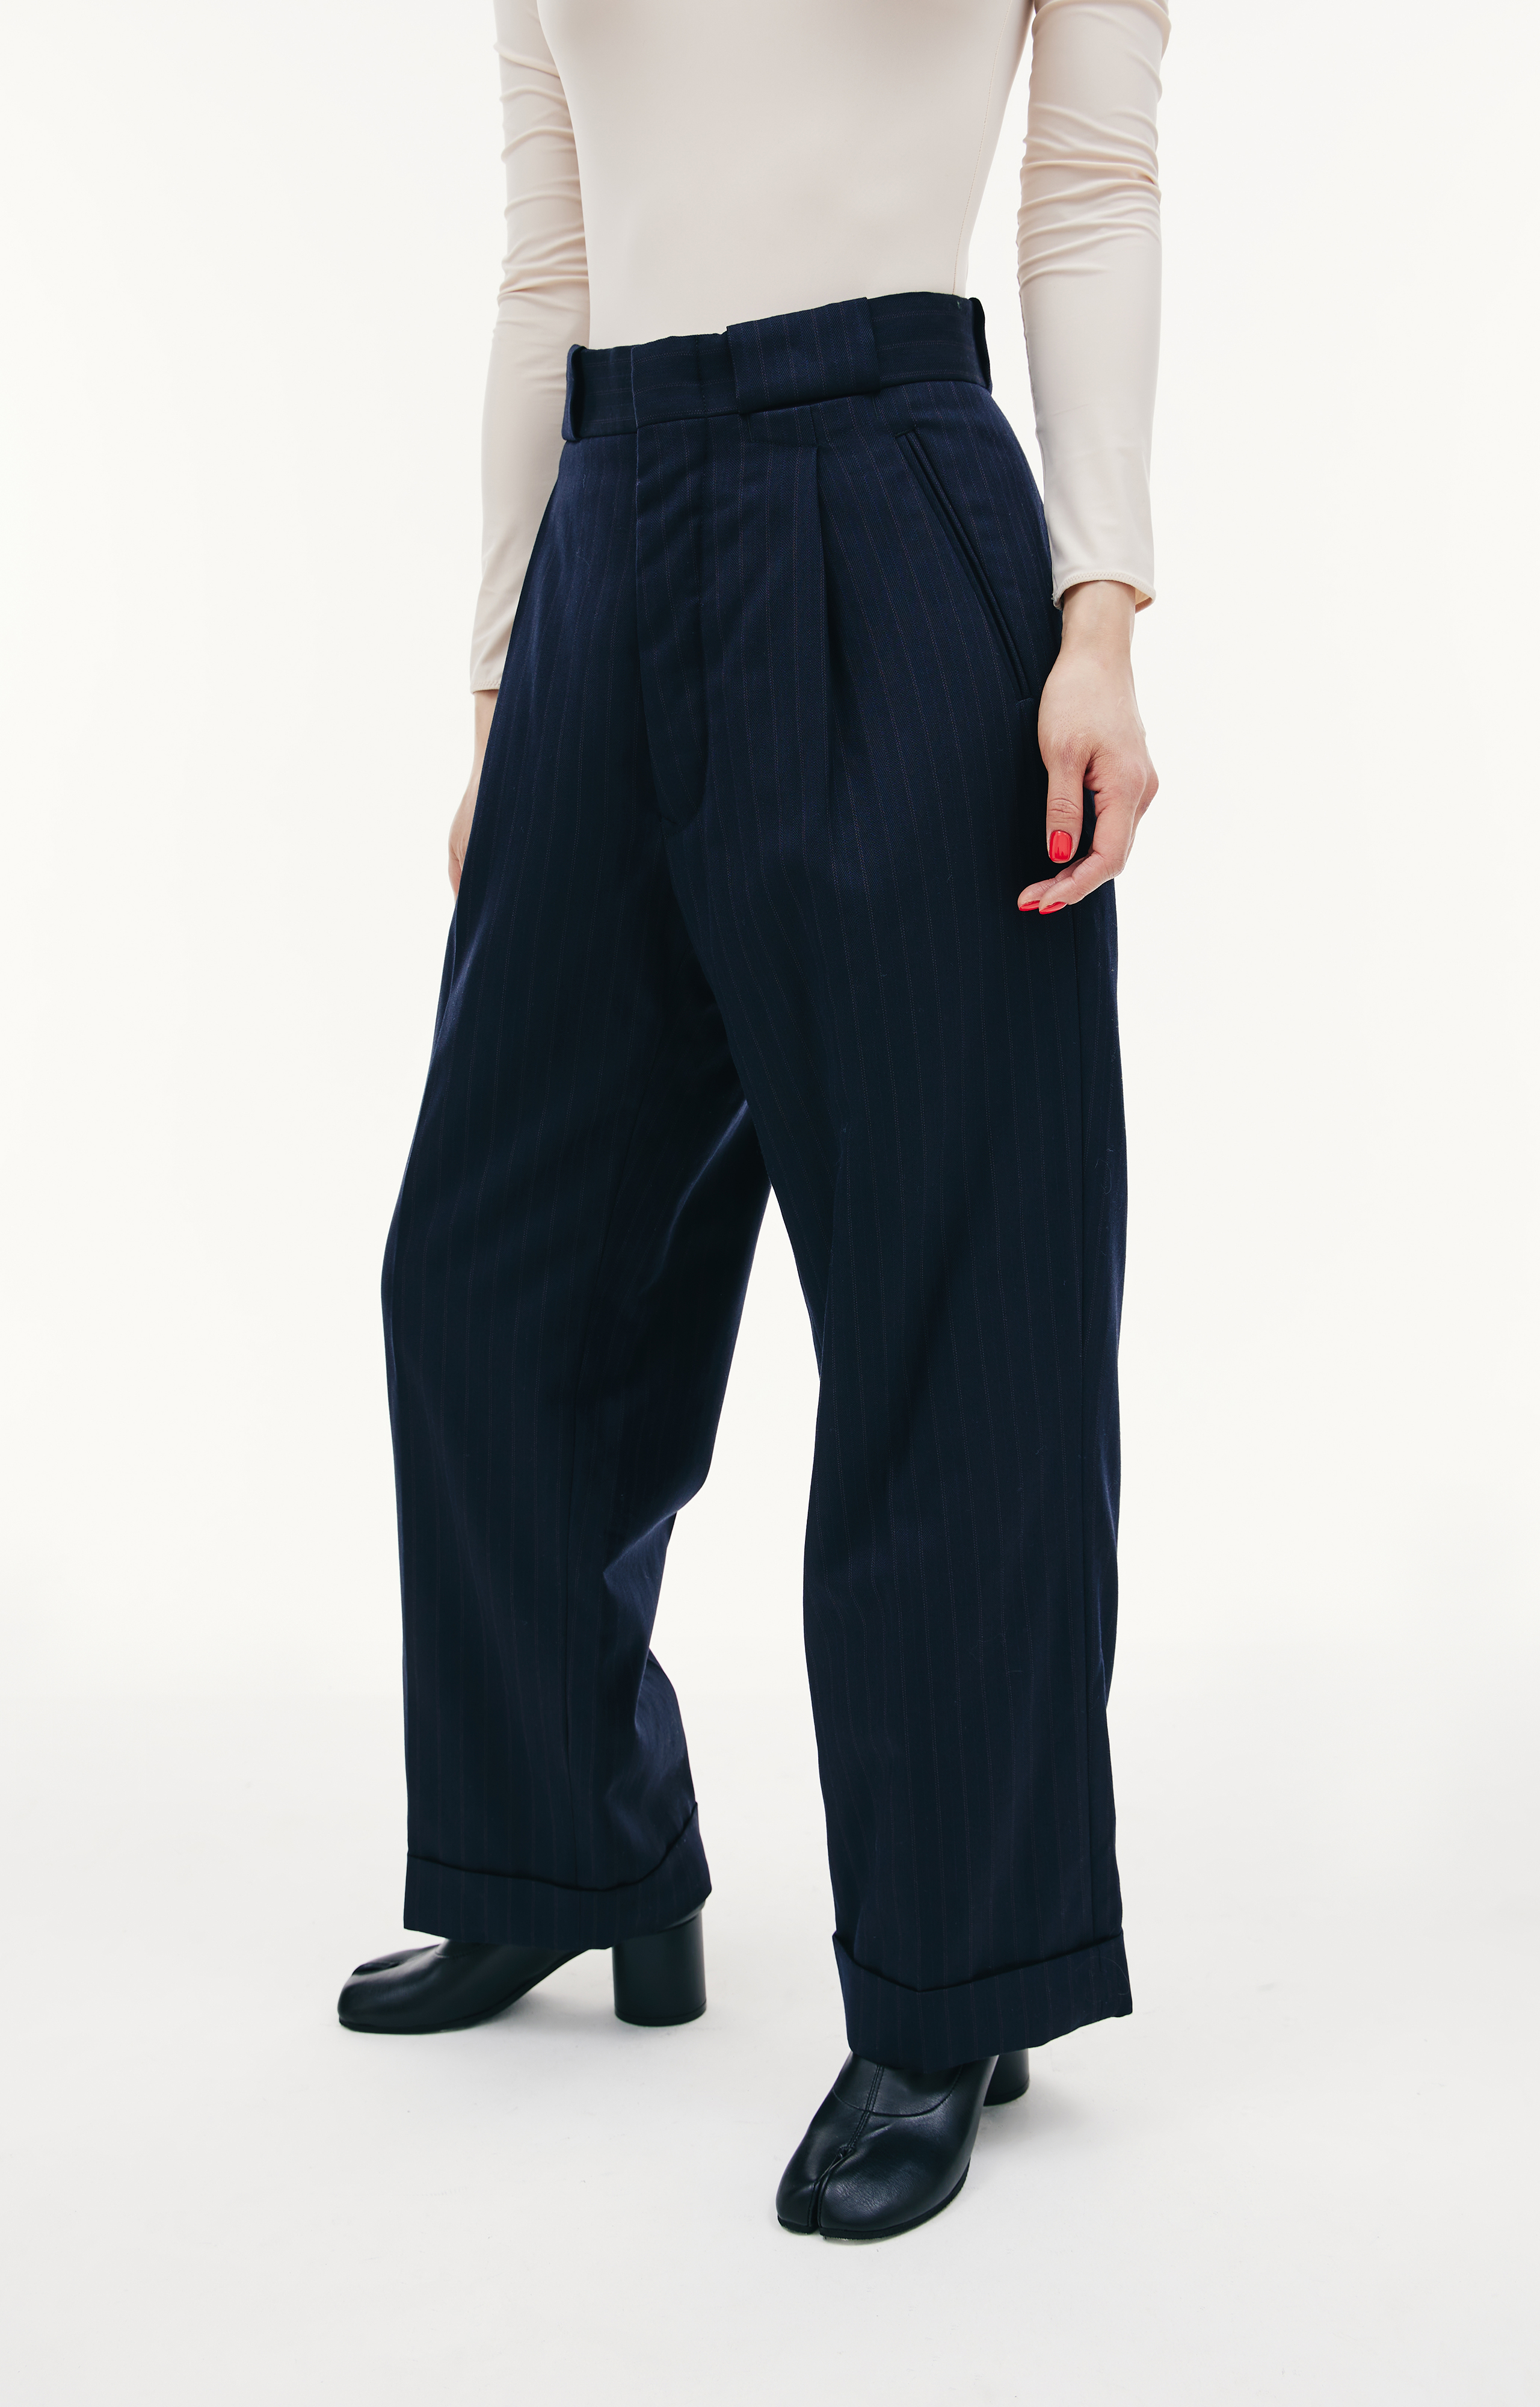 Buy Maison Margiela women navy blue striped padded wool trousers